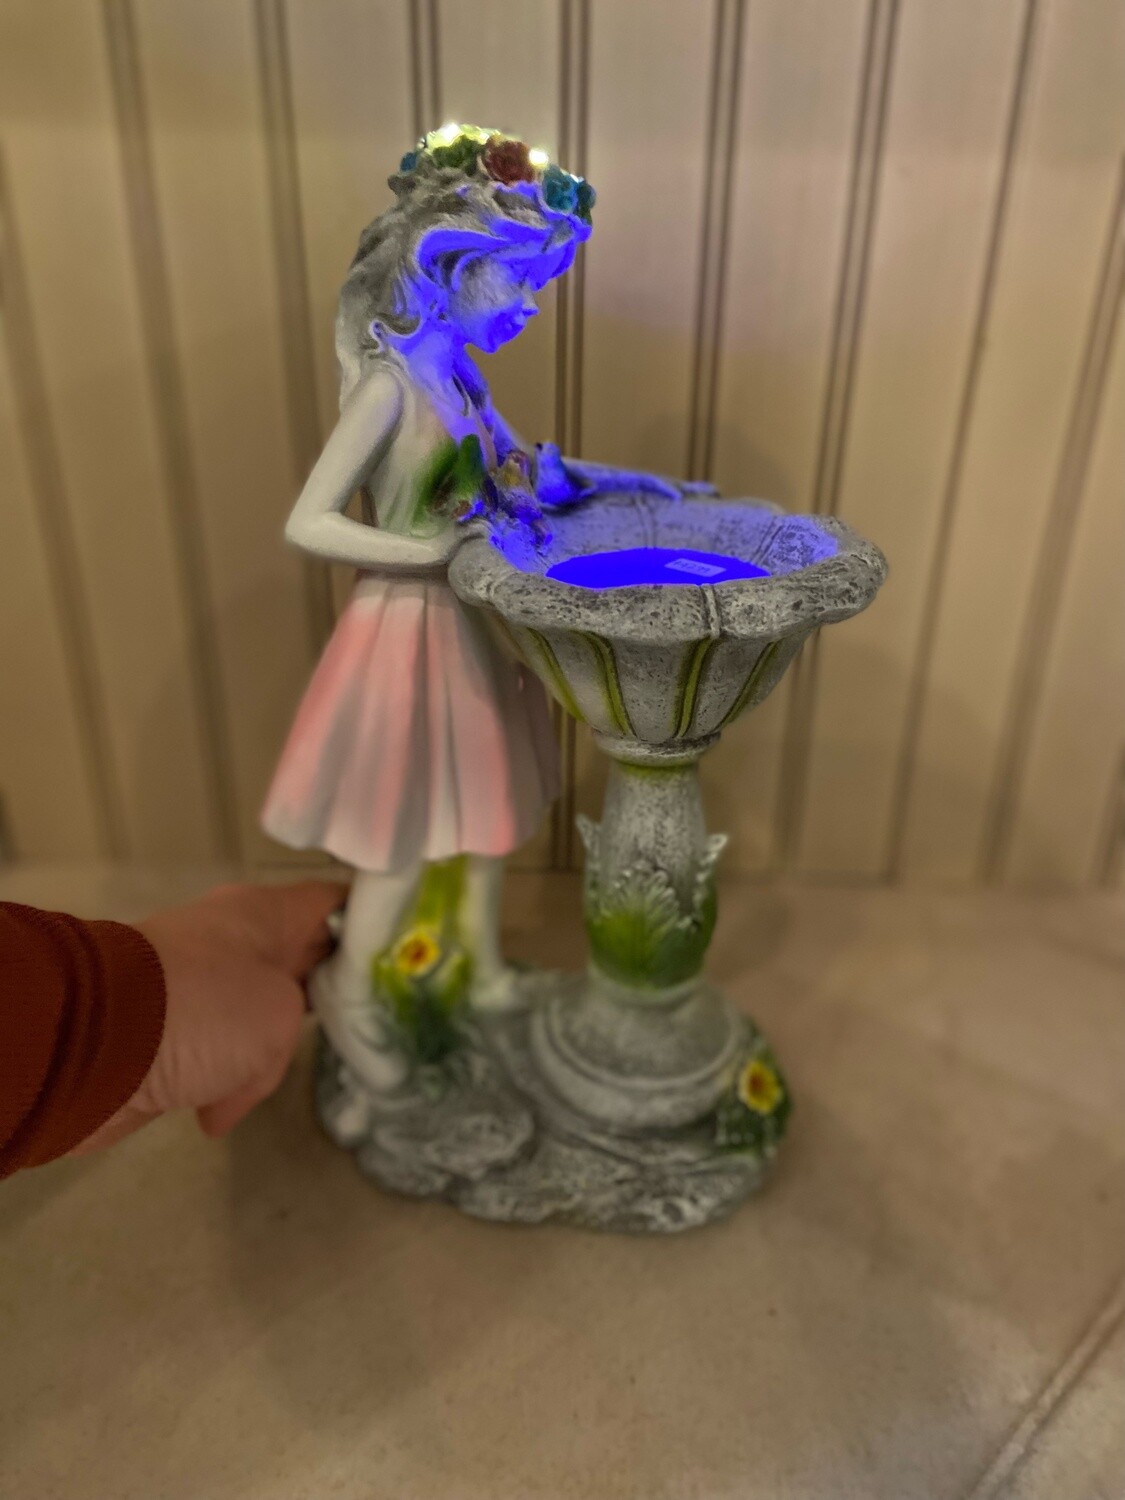 Solar Fairy Fountain